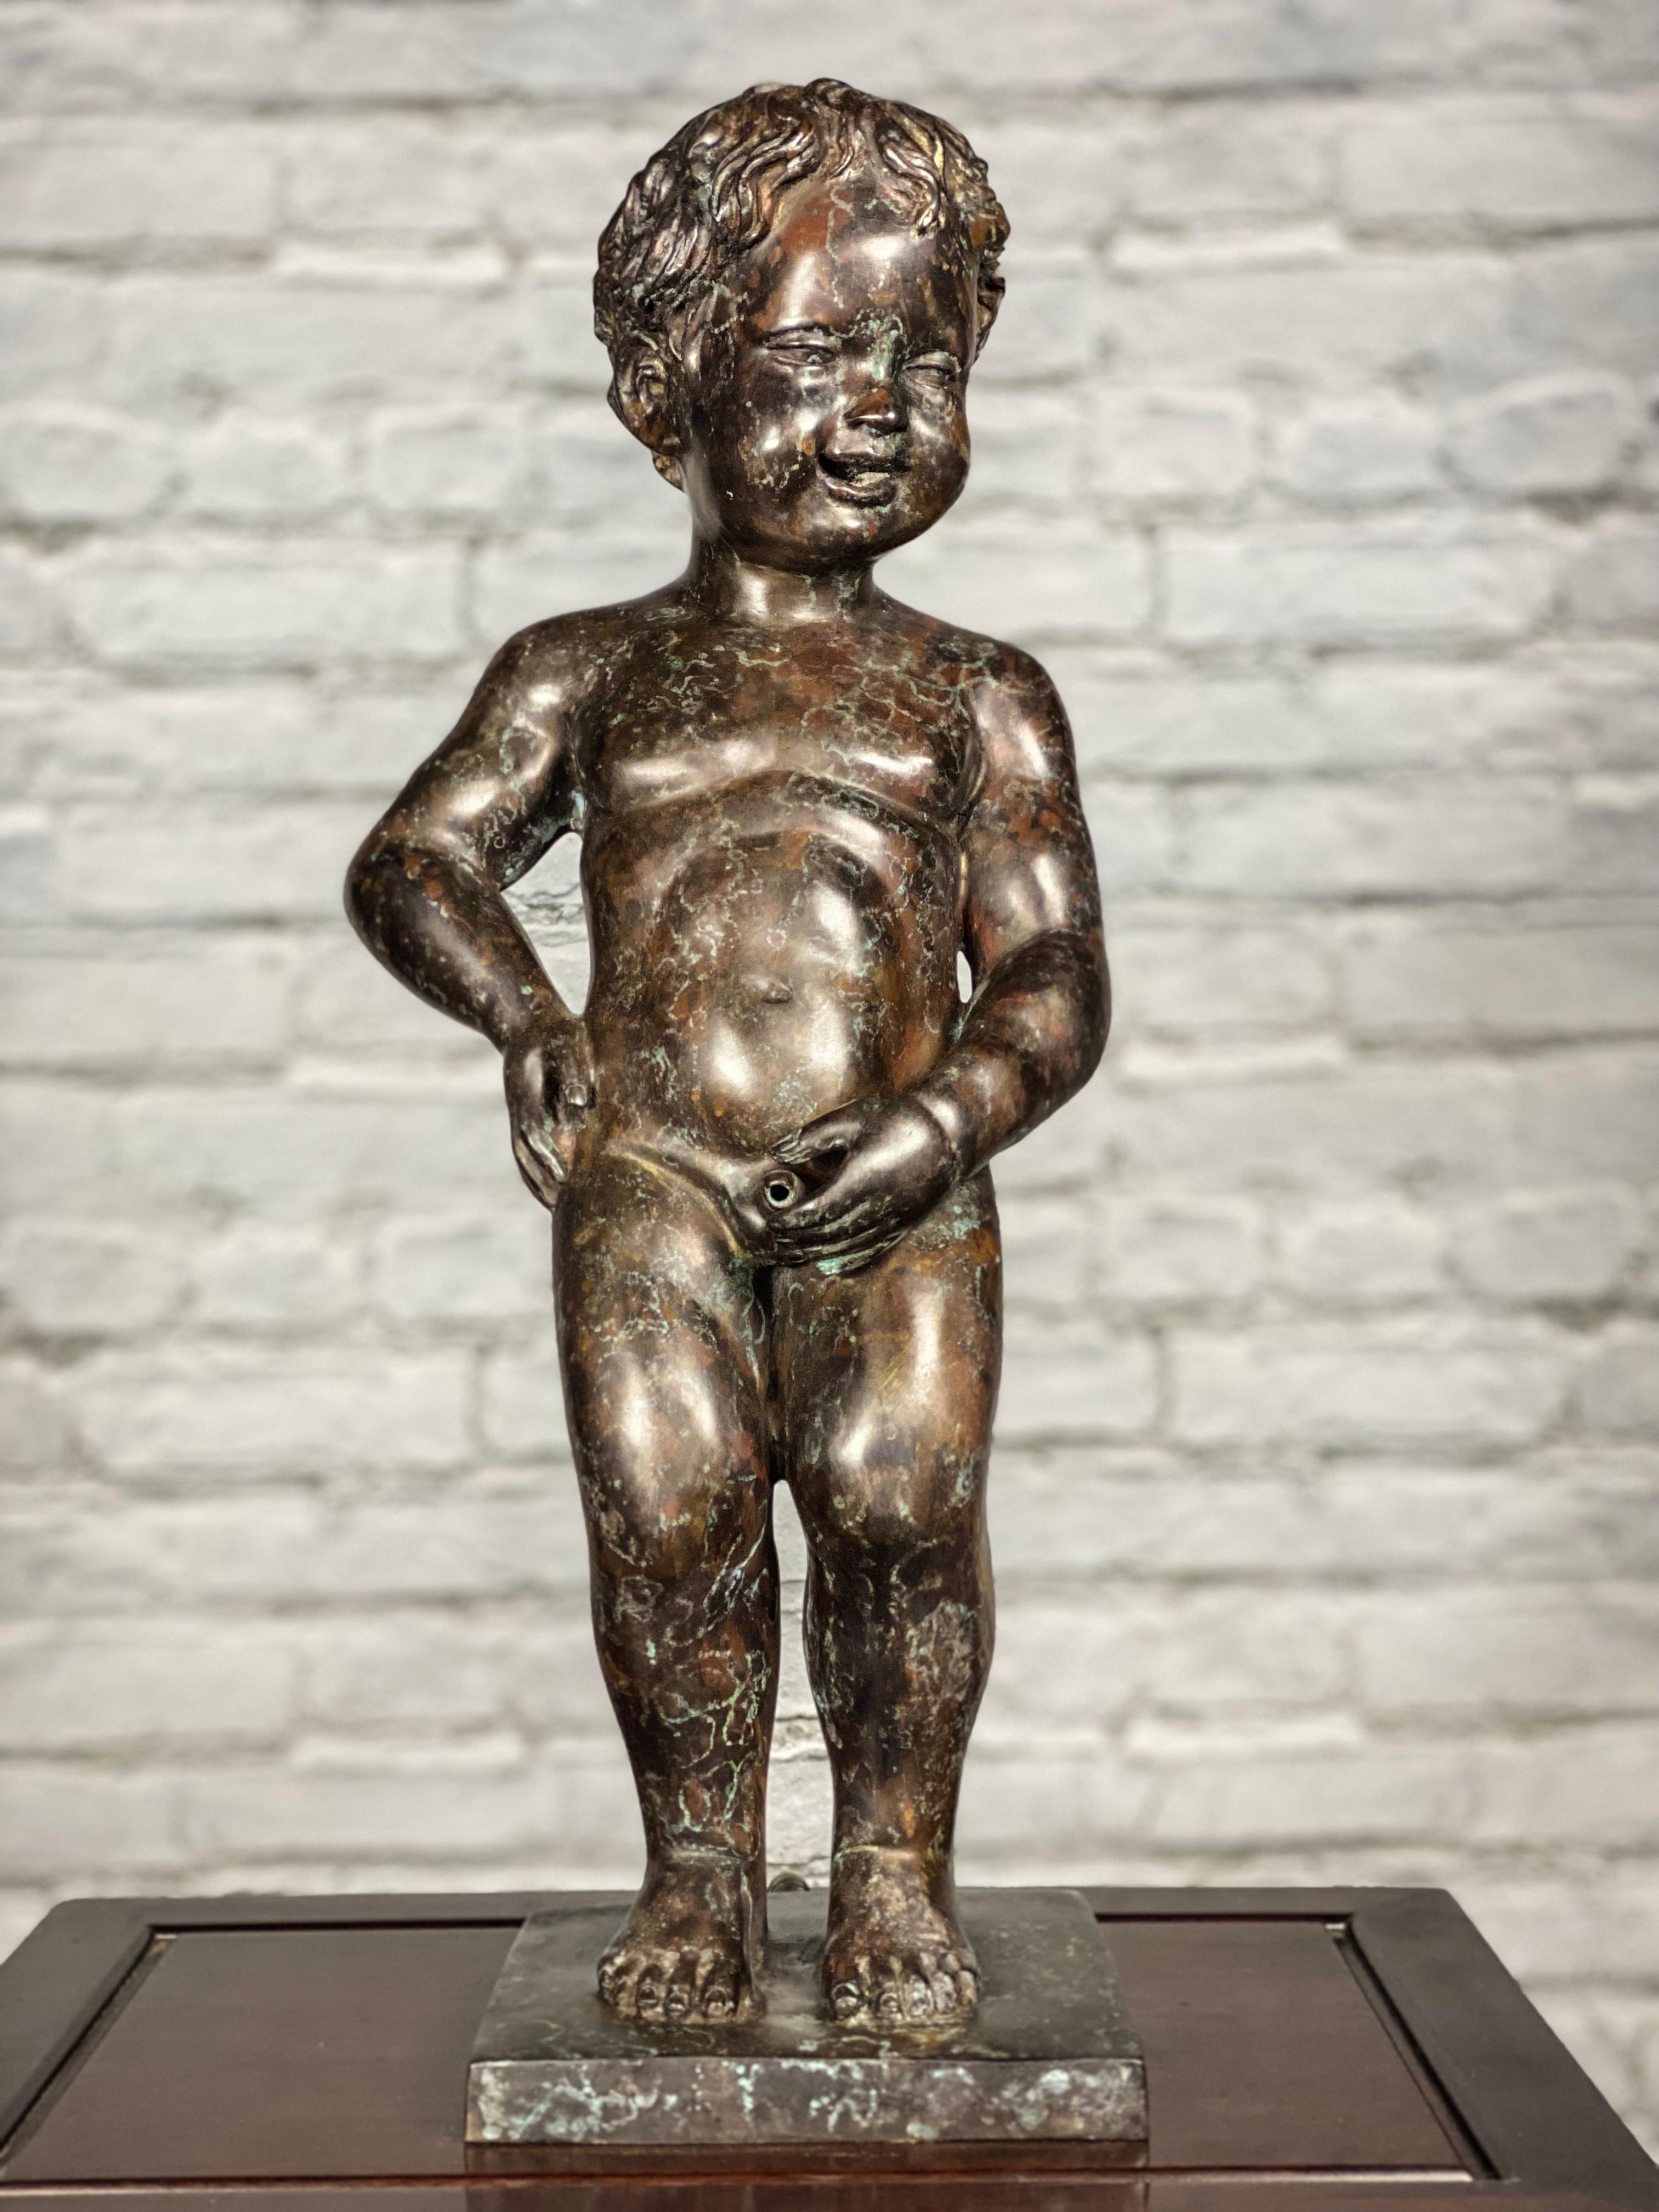 Suchen Sie nach einer lustigen und skurrilen Gartenstatue? Unser kleiner Bronze-Brunnen Boy Peeing ist ein echter Hingucker! Dieser im Wachsausschmelzverfahren aus Bronze gegossene kleine antike Cherub im griechisch-römischen Stil ist die perfekte